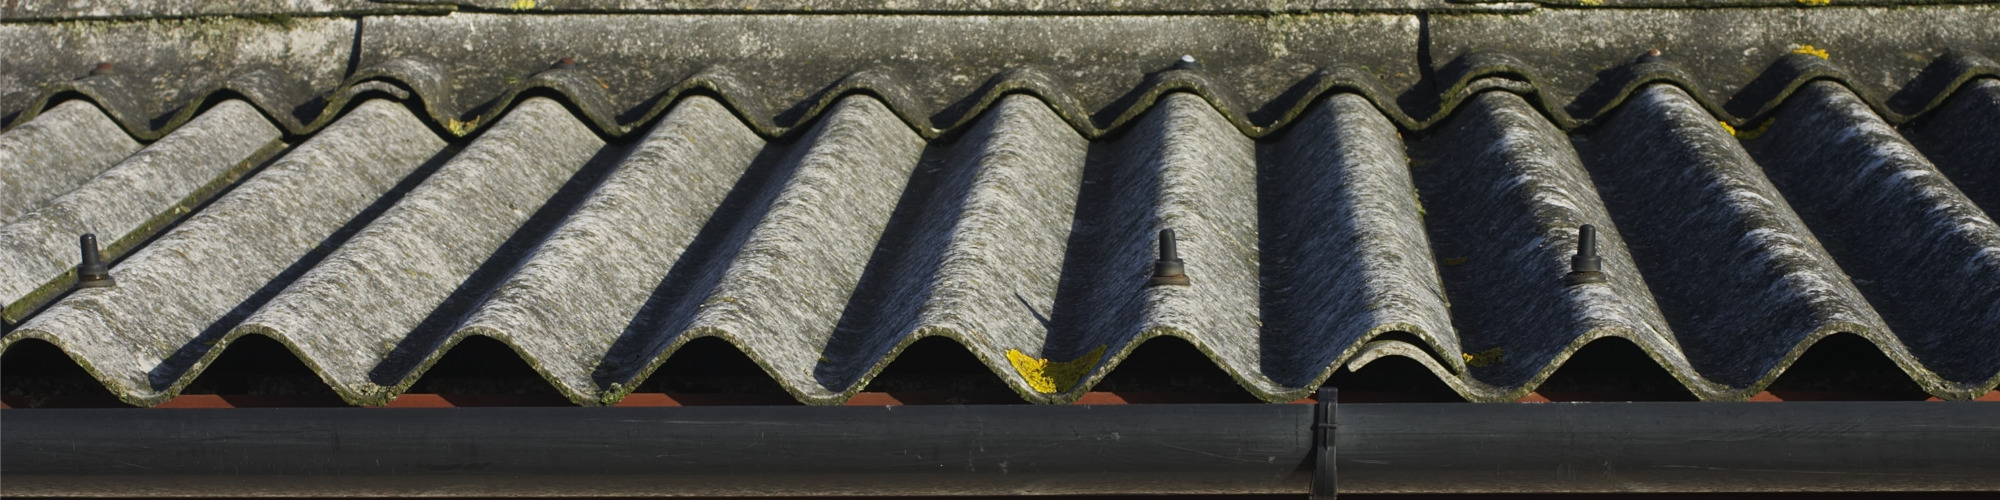 Asbestos & the Duties of Residential Landlords